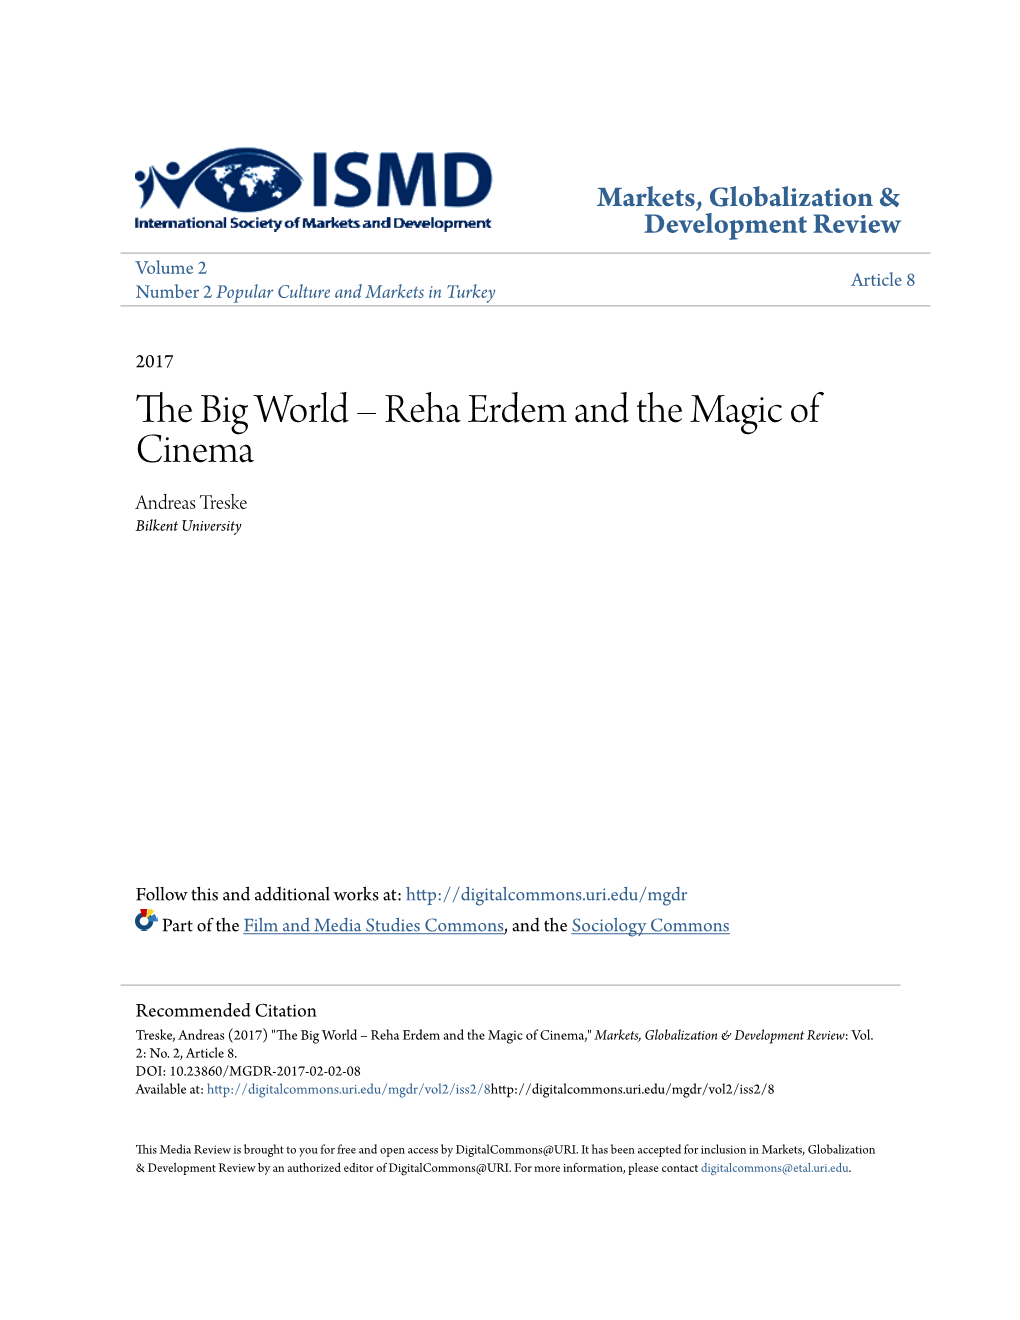 The Big World – Reha Erdem and the Magic of Cinema